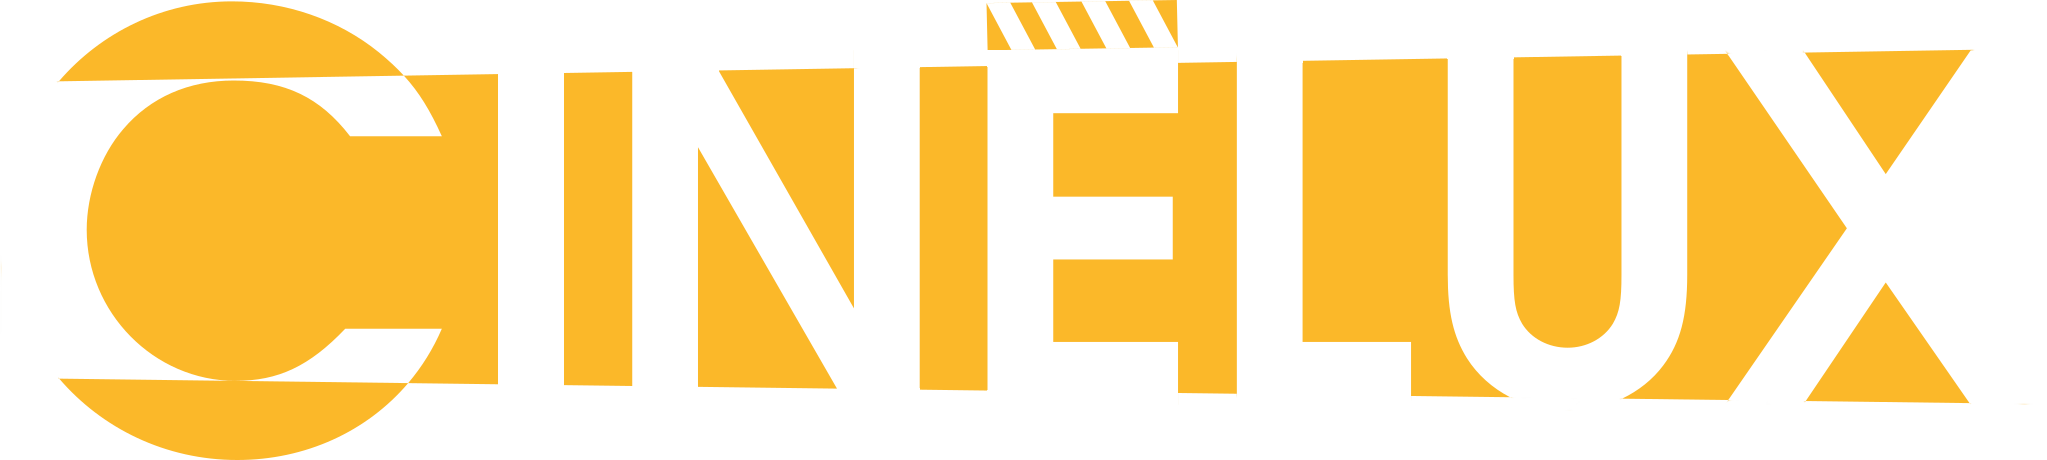 cinelux-logo_2016.yt